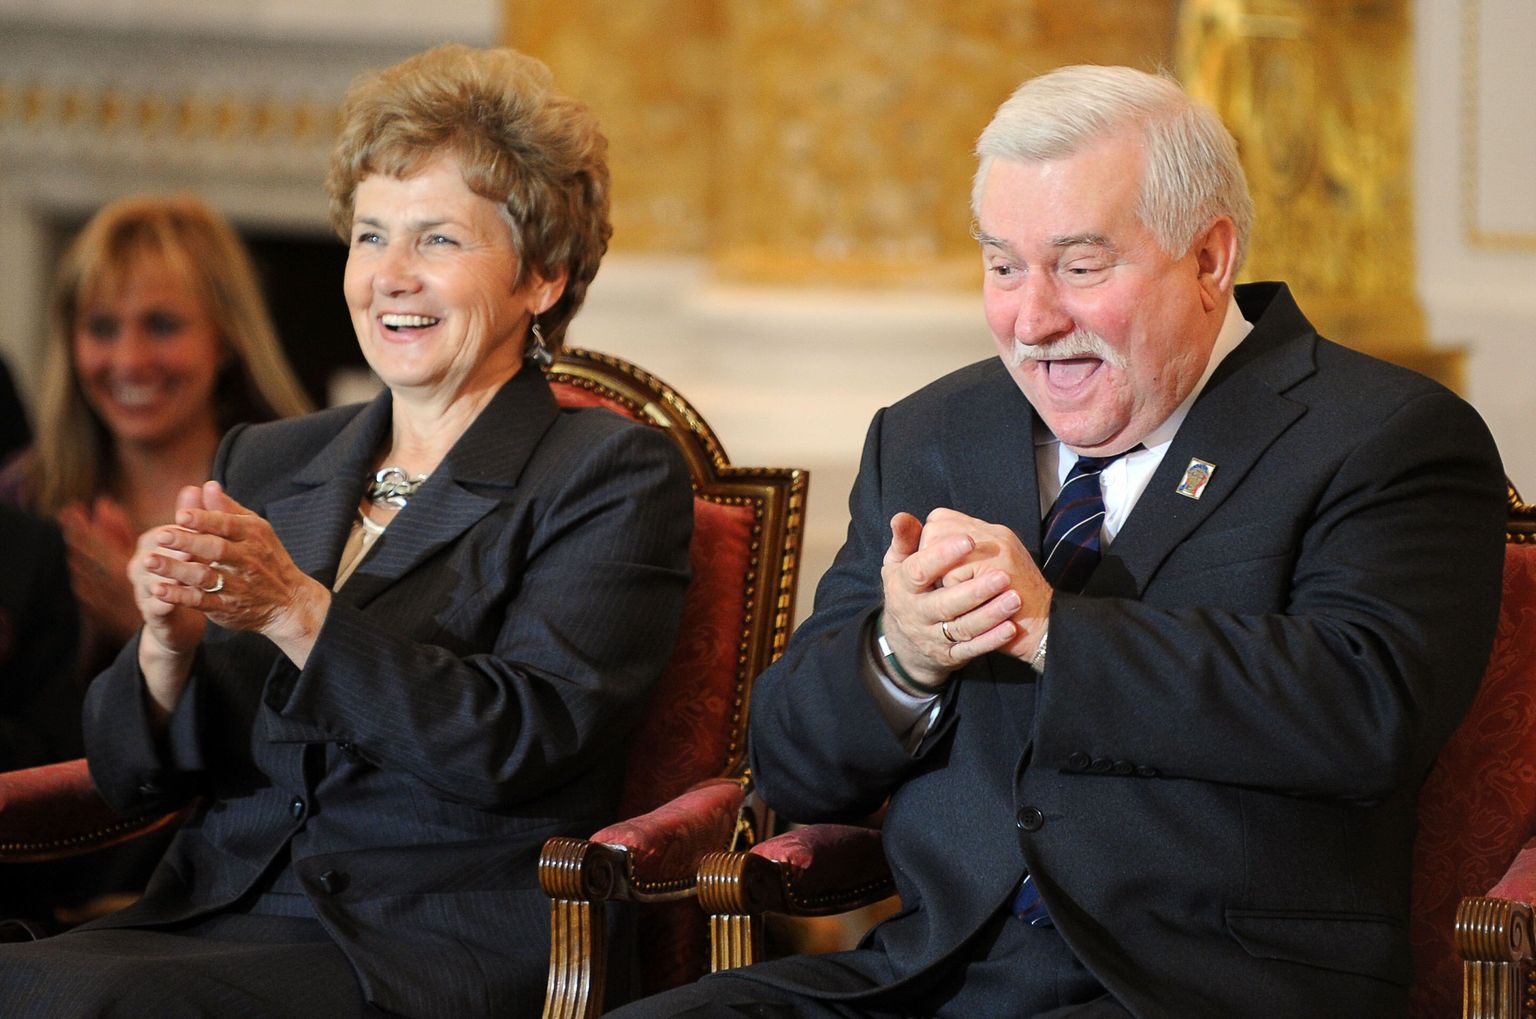 Ilma presidendi vastuvõtu kutseta jäänud Poola endine riigijuht Lech Wałęsa lubas homme ikkagi peole minna, kui ta naisel peaks tekkima soov tantsida. Pildil on Lech Wałęsa koos oma naise Danutaga.